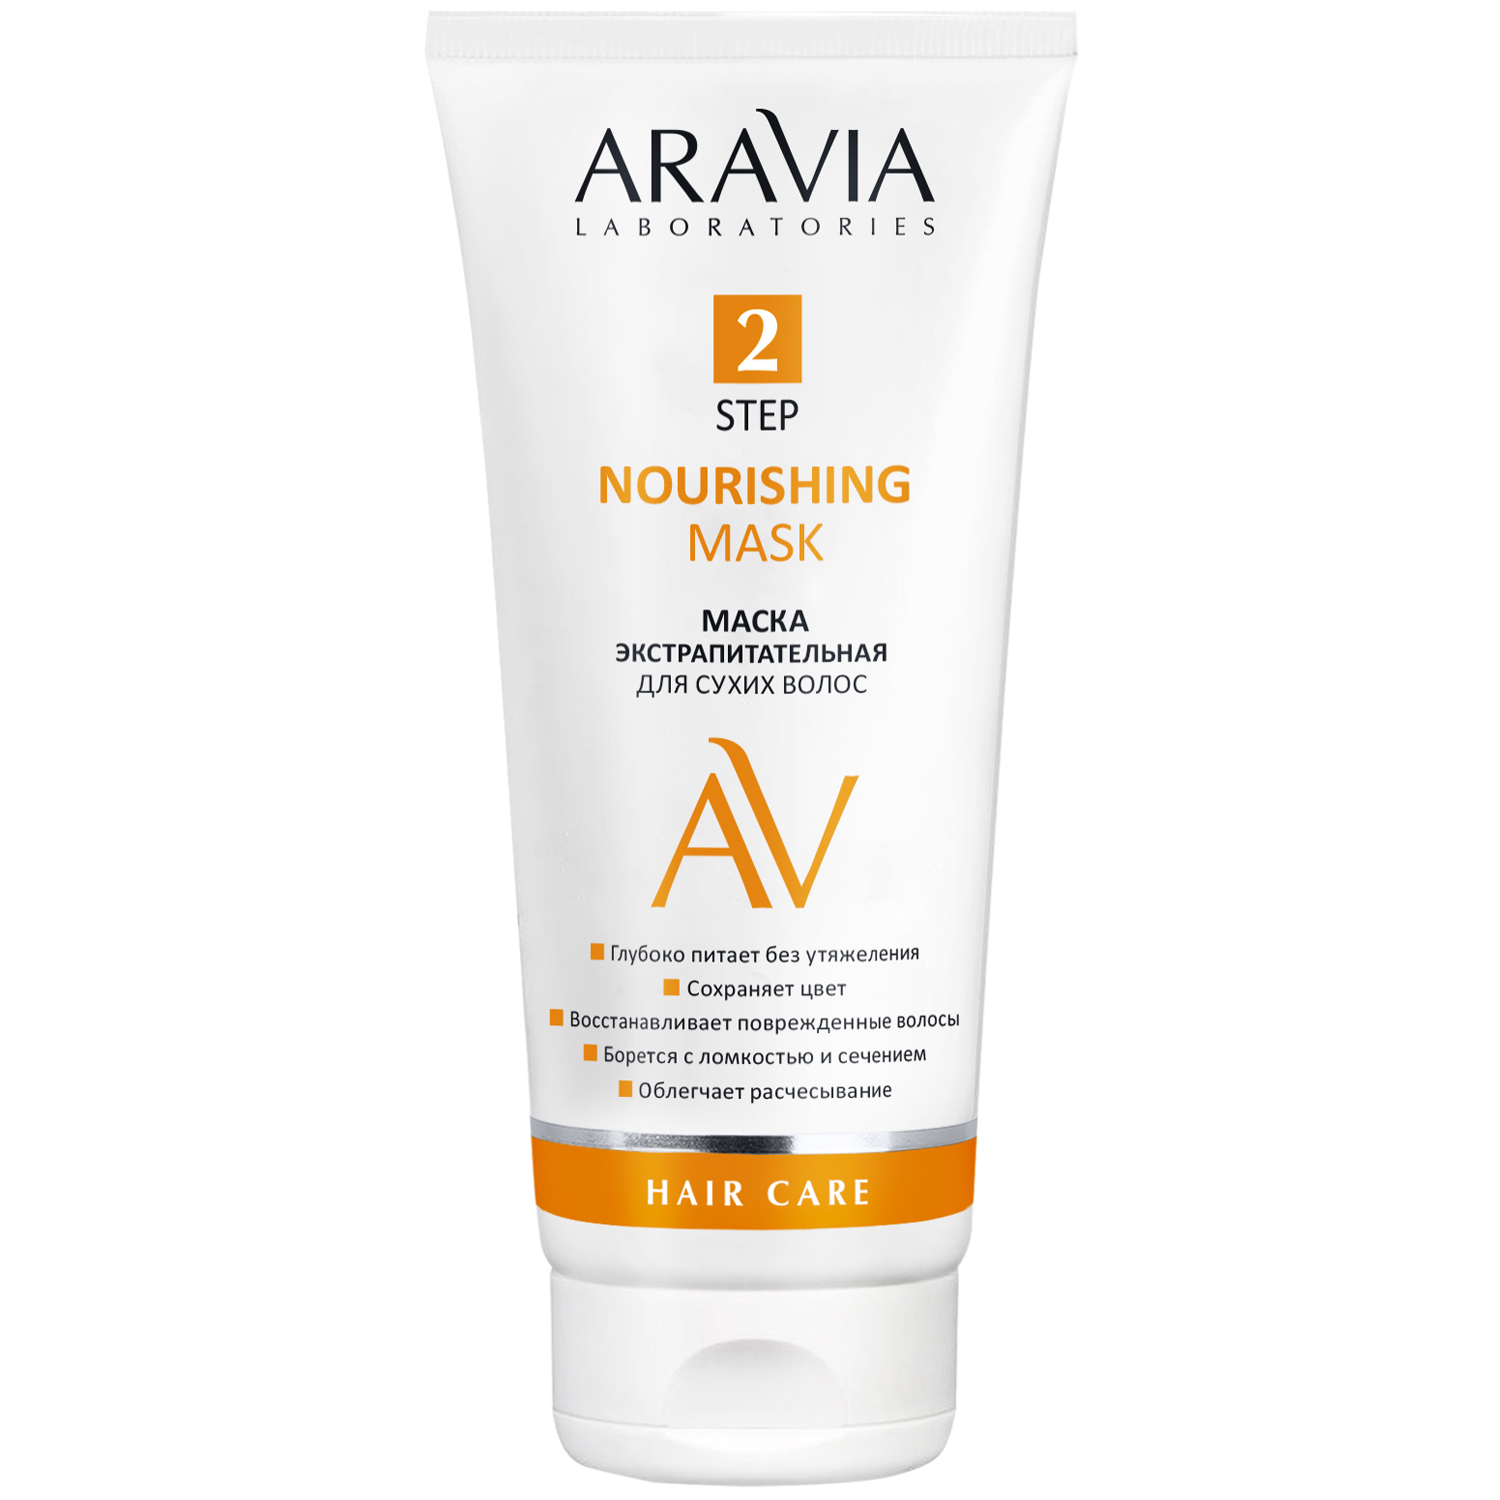 Aravia Laboratories Маска экстрапитательная для сухих волос Nourishing Mask, 200 мл (Aravia Laboratories, Уход за волосами) экстрапитательная маска для волос aravia laboratories nourishing mask 200 мл